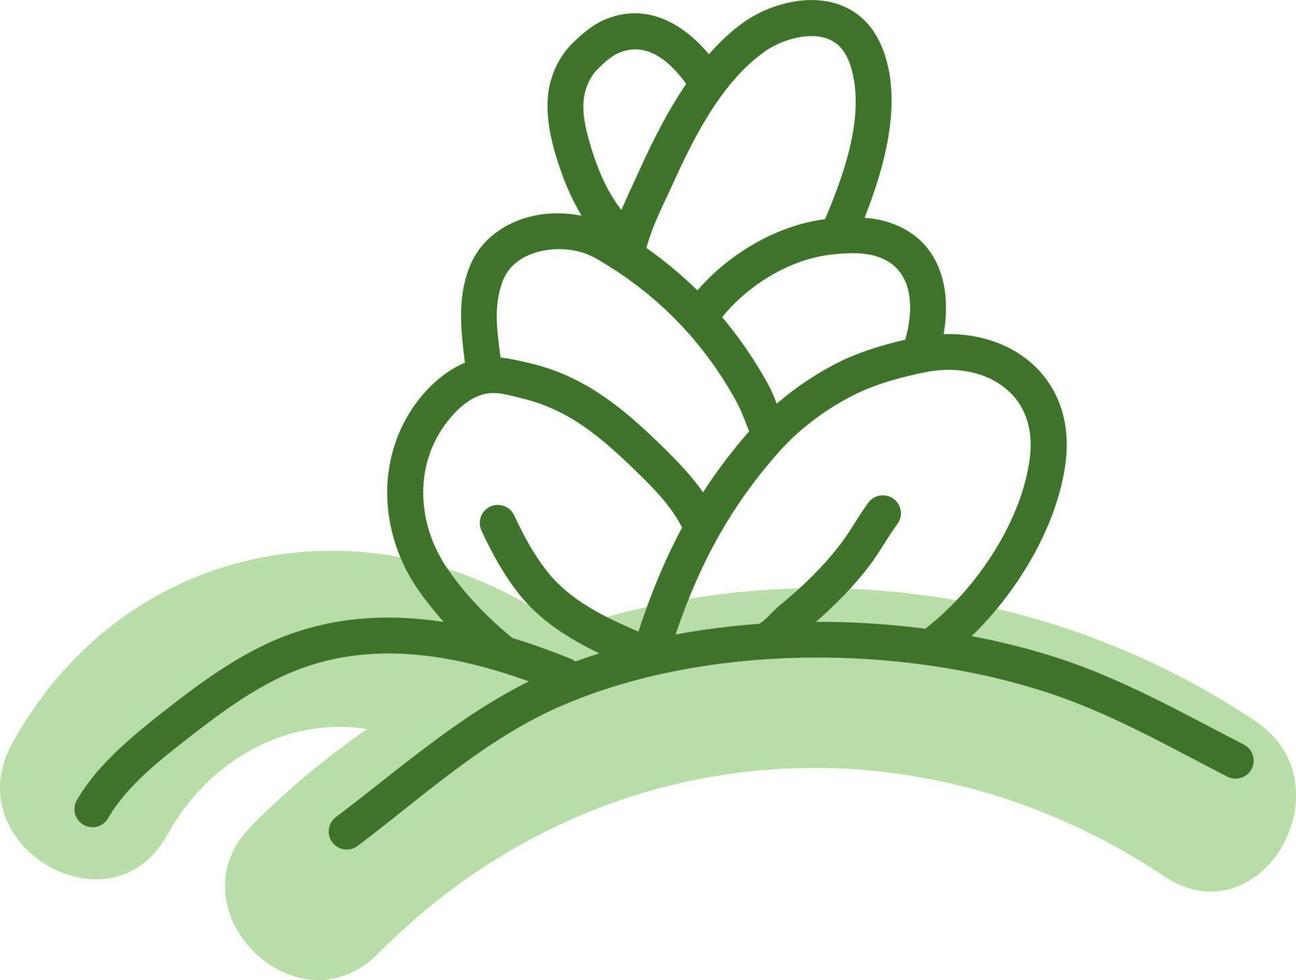 Hasenohren Kaktus, Illustration, Vektor auf weißem Hintergrund.